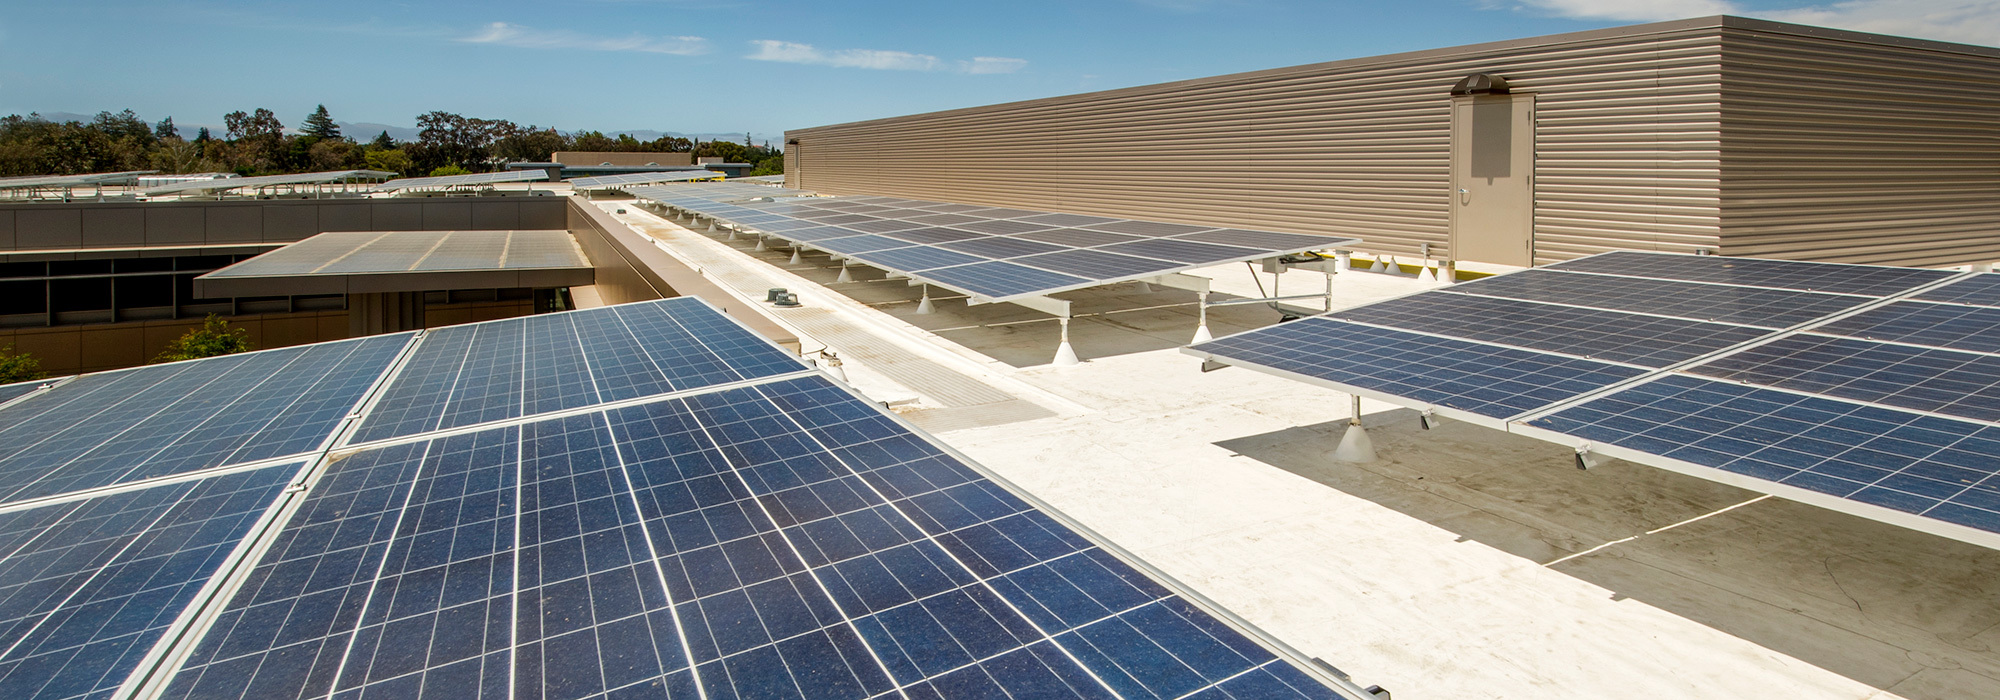 Strom-Solar-Fabrik-Dach.jpg